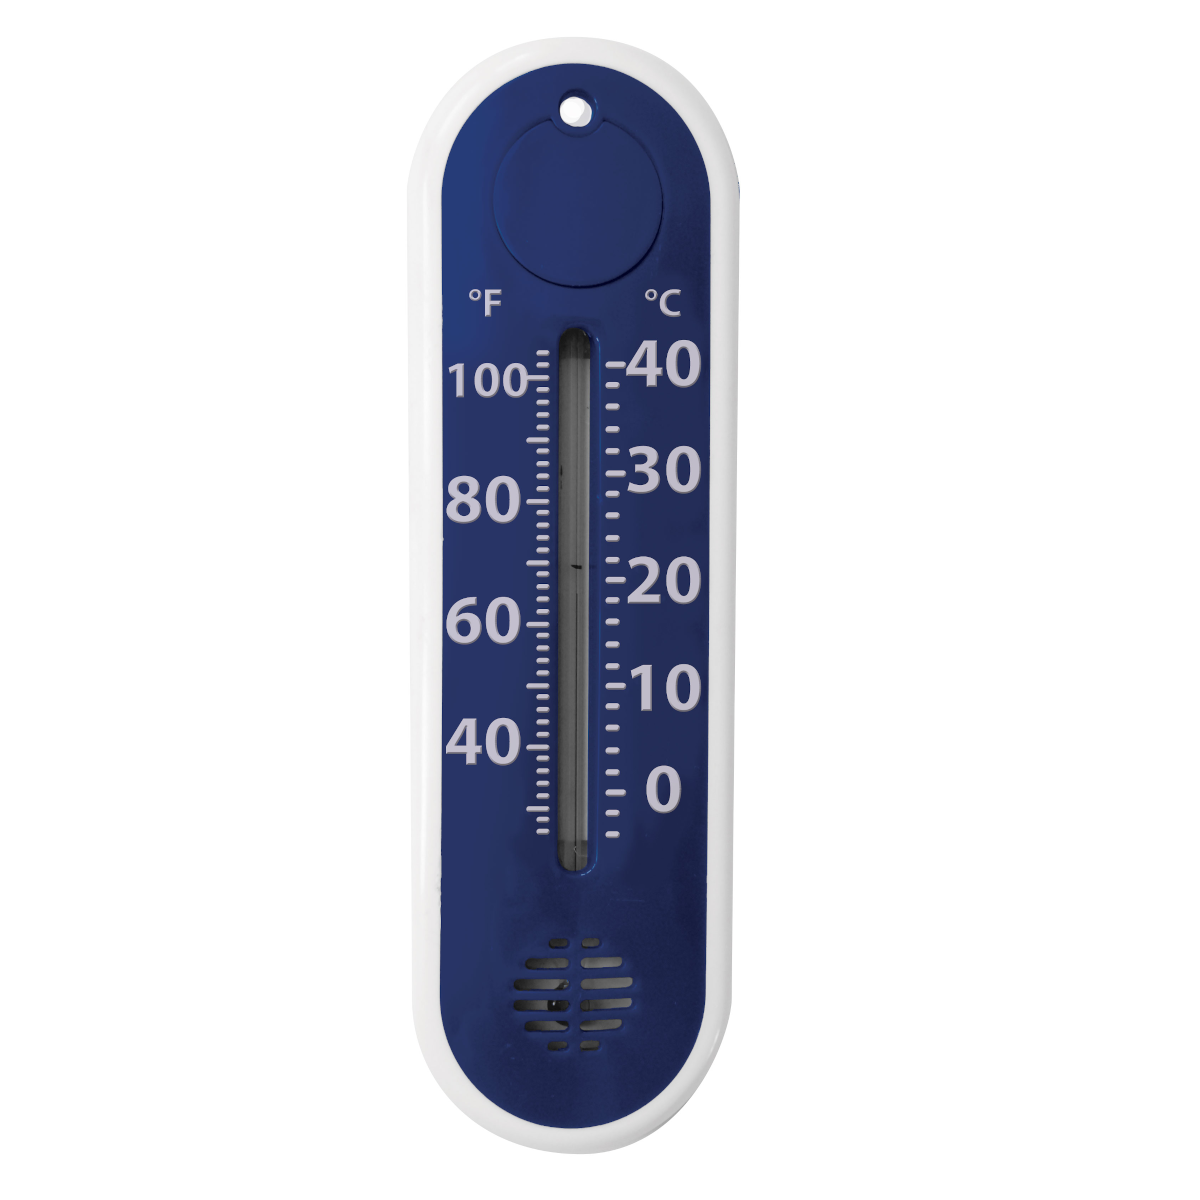 Thermomètre bleu foncé - Concept Piscine Design